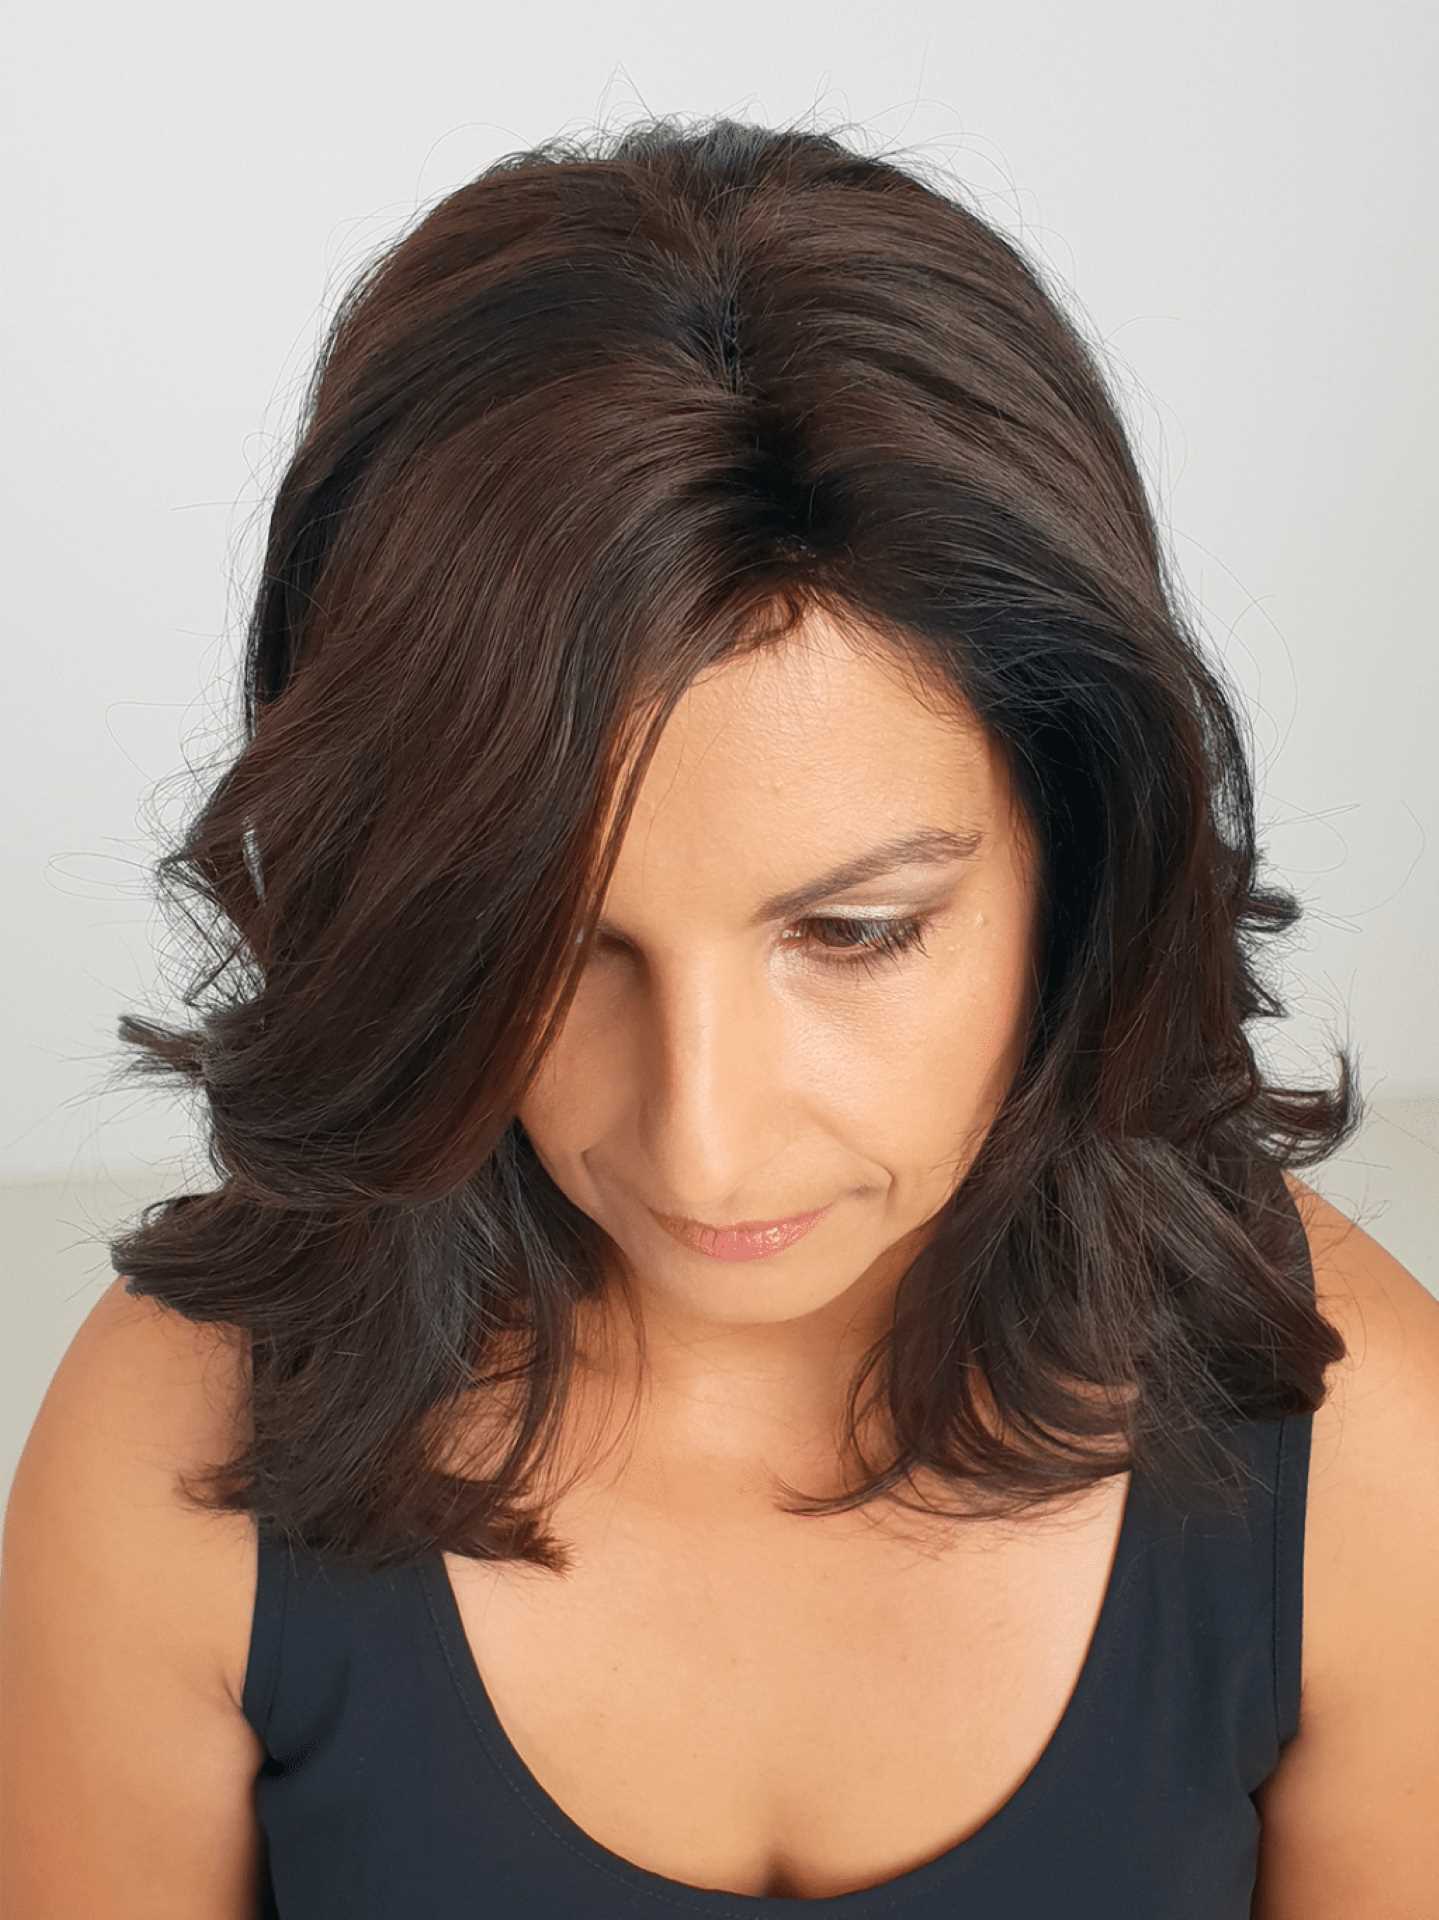 Nach einer Haarverdichtung an braunen Haaren einer Frau